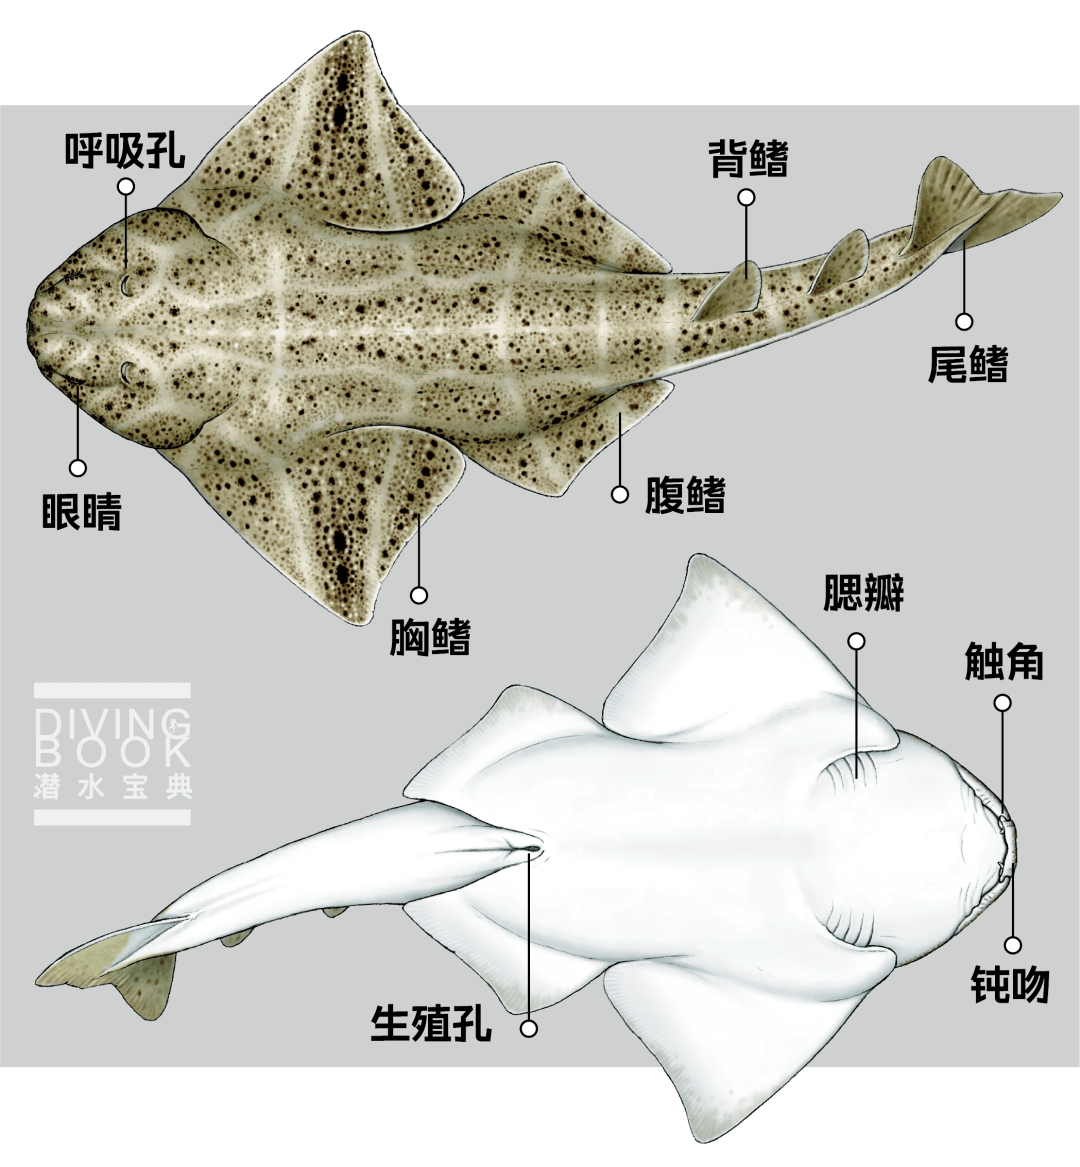 它的胸鳍虽然很大,但和头部是完全独立的,而鳐鱼的胸鳍与头部完全相连